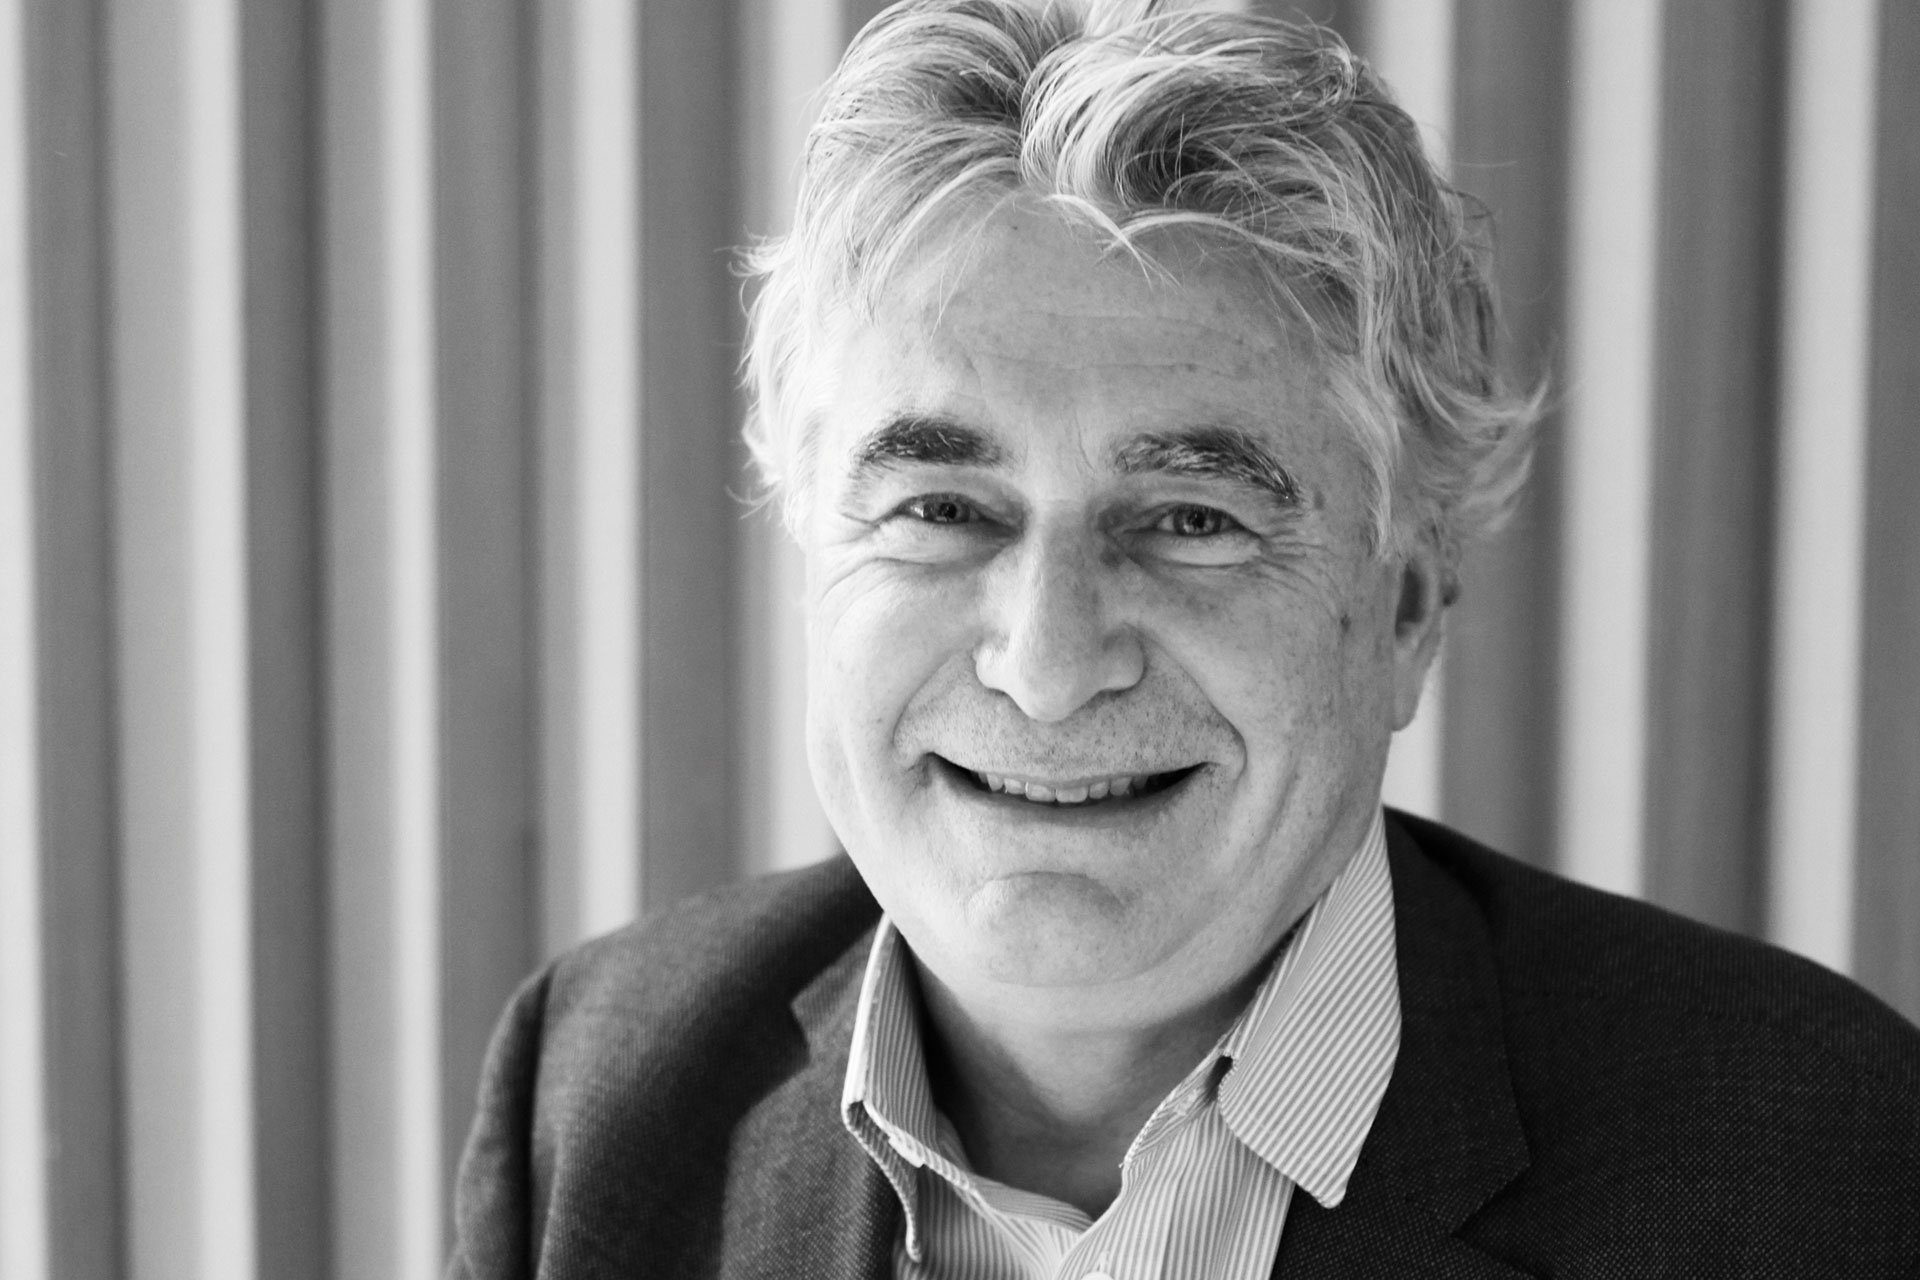 Christophe Salin ist Generaldirektor von Domaines Barons de Rothschild (Bodegas Caro in Argentinien und Los Vascos in Chile).